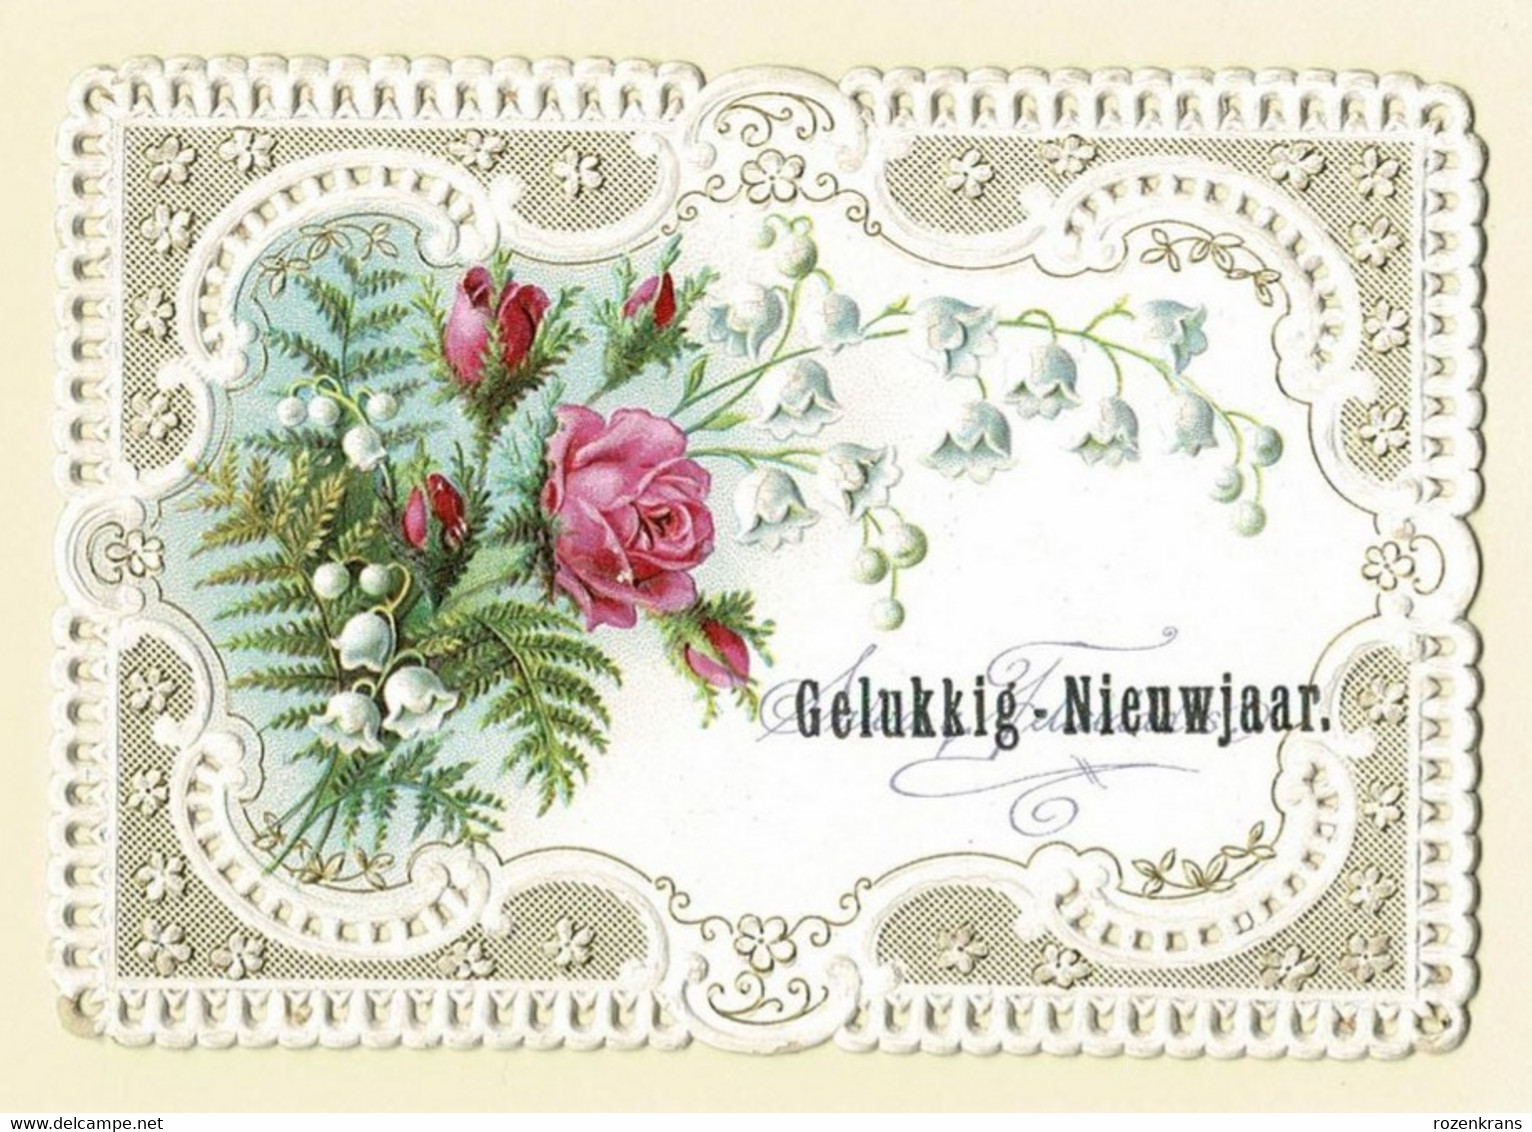 Bonne Annee Gelukkig Nieuwjaar Carte Dentellee Gaufree Embossed Canivet Fleurs Flowers Fam Mutsaers Tilburg - Flowers